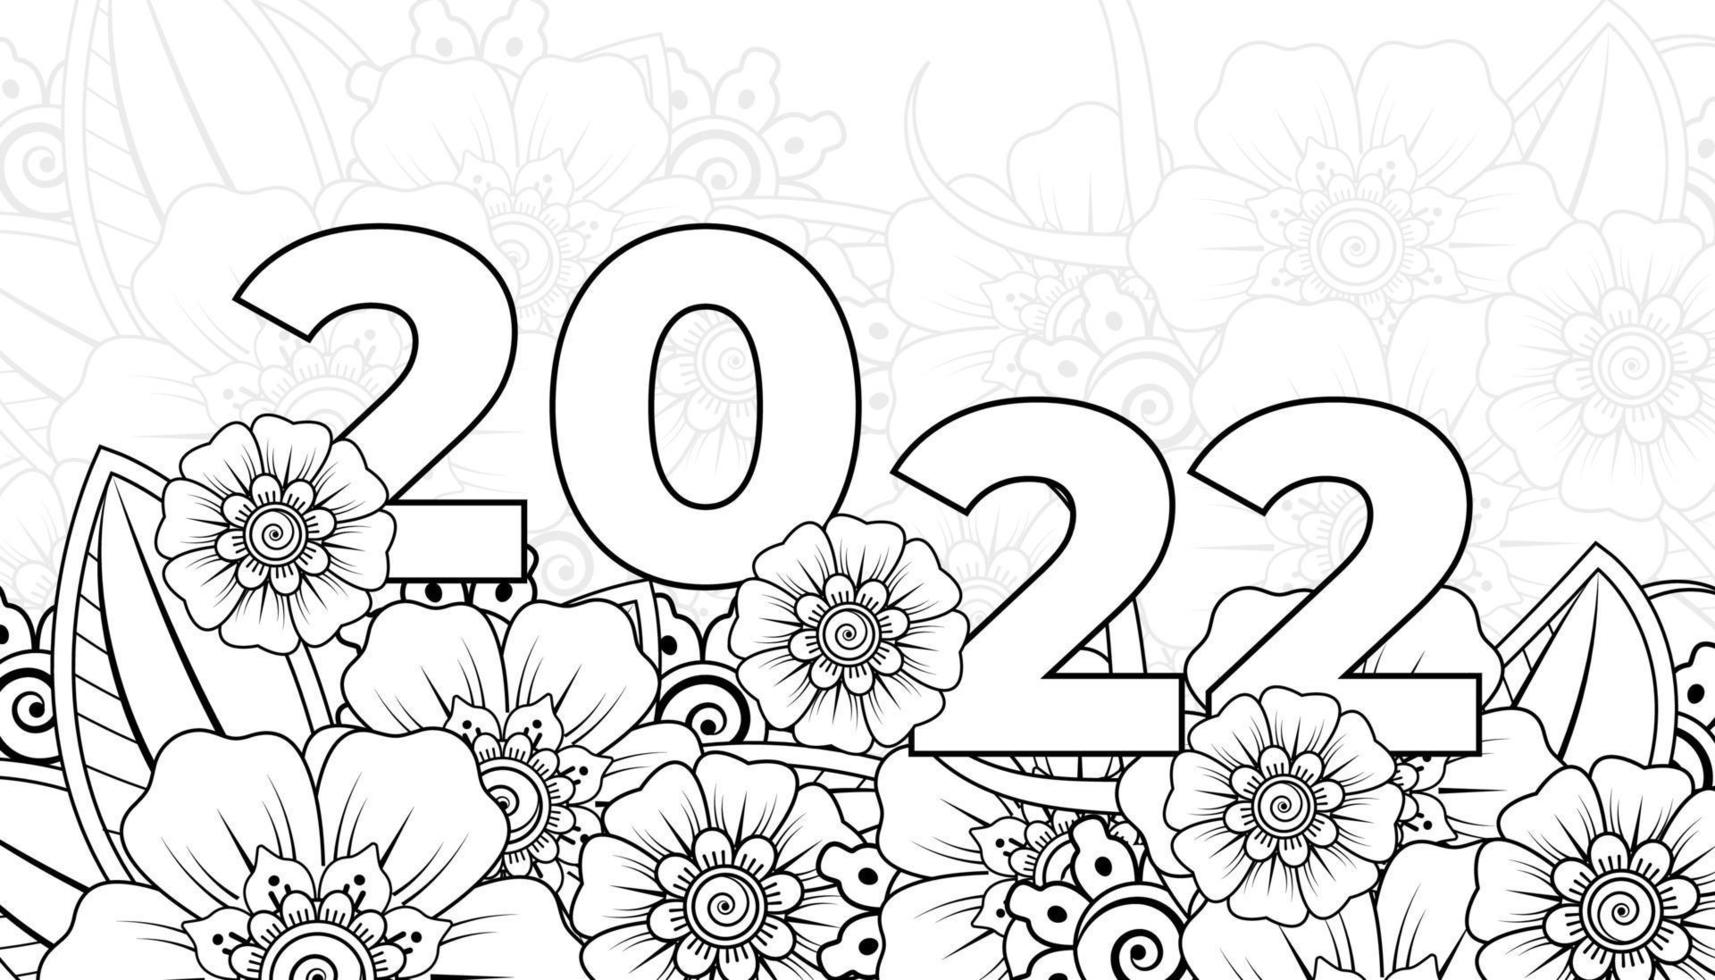 gelukkig nieuwjaar 2022 banner of kaartsjabloon met mehndi bloem vector